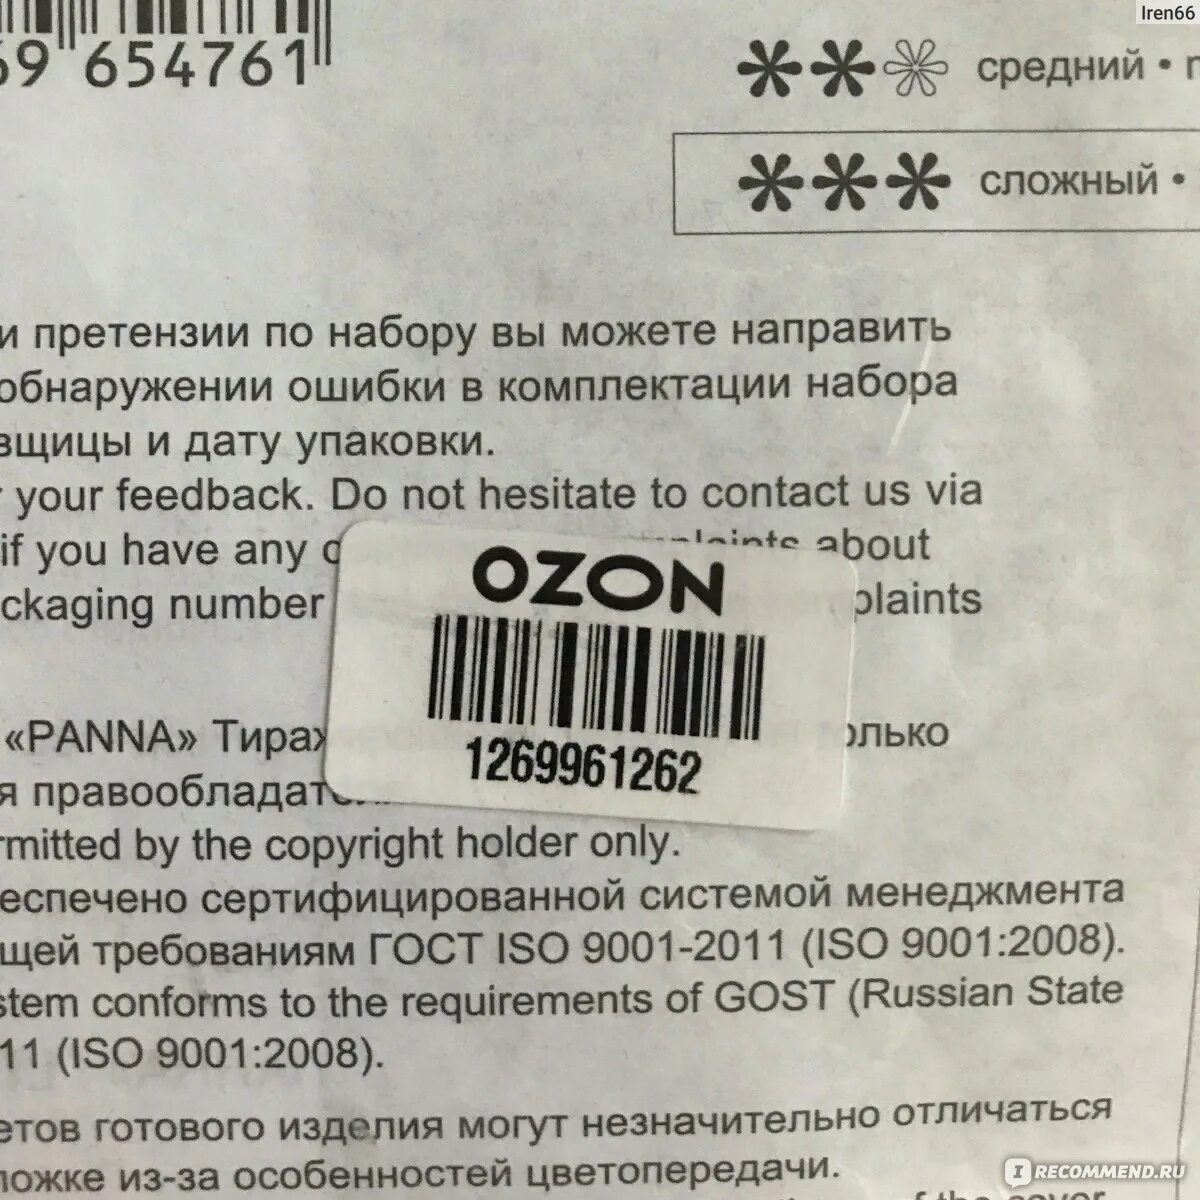 Штрих код для возврата. Этикетка на товар для озона. Штрихкод Озон требования. OZON этикетка штрих код. Требования к этикетке Озон.